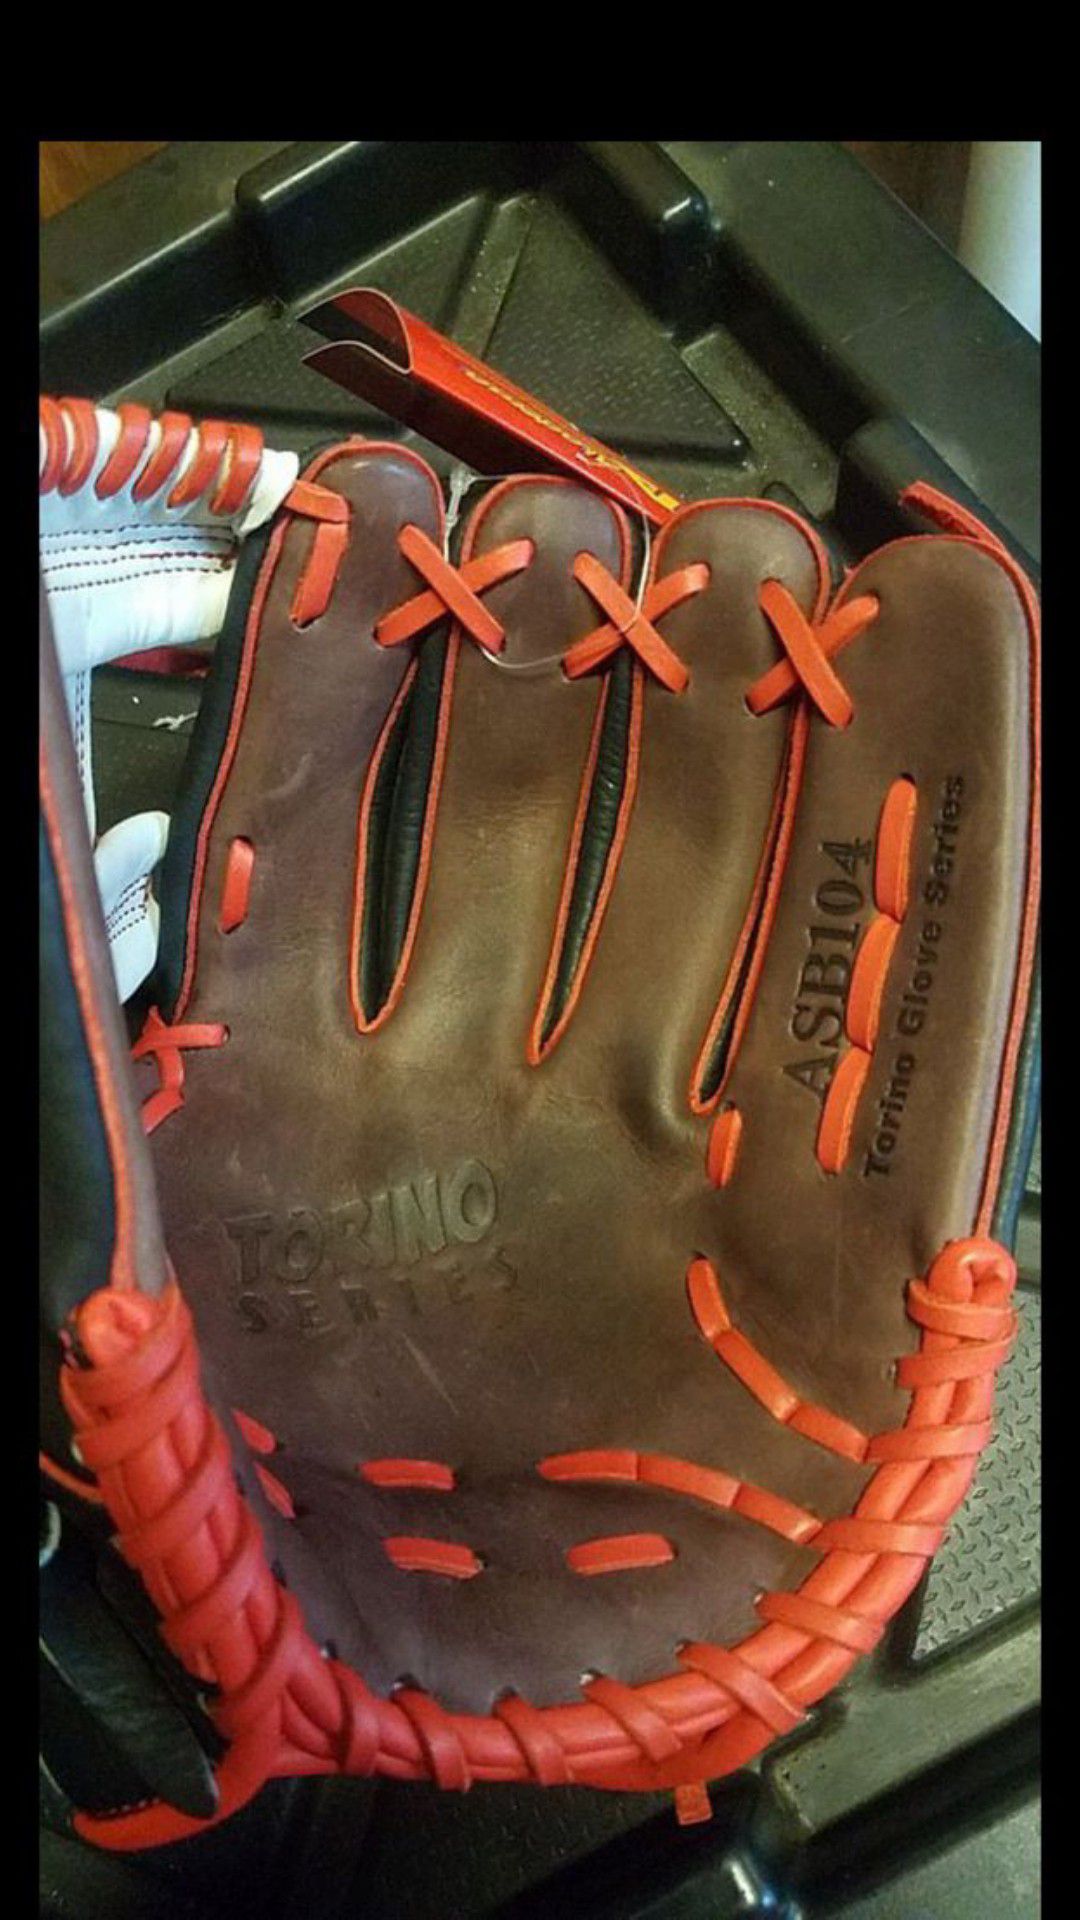 Akadema Torino Series, 11.5 inch Baseball Glove